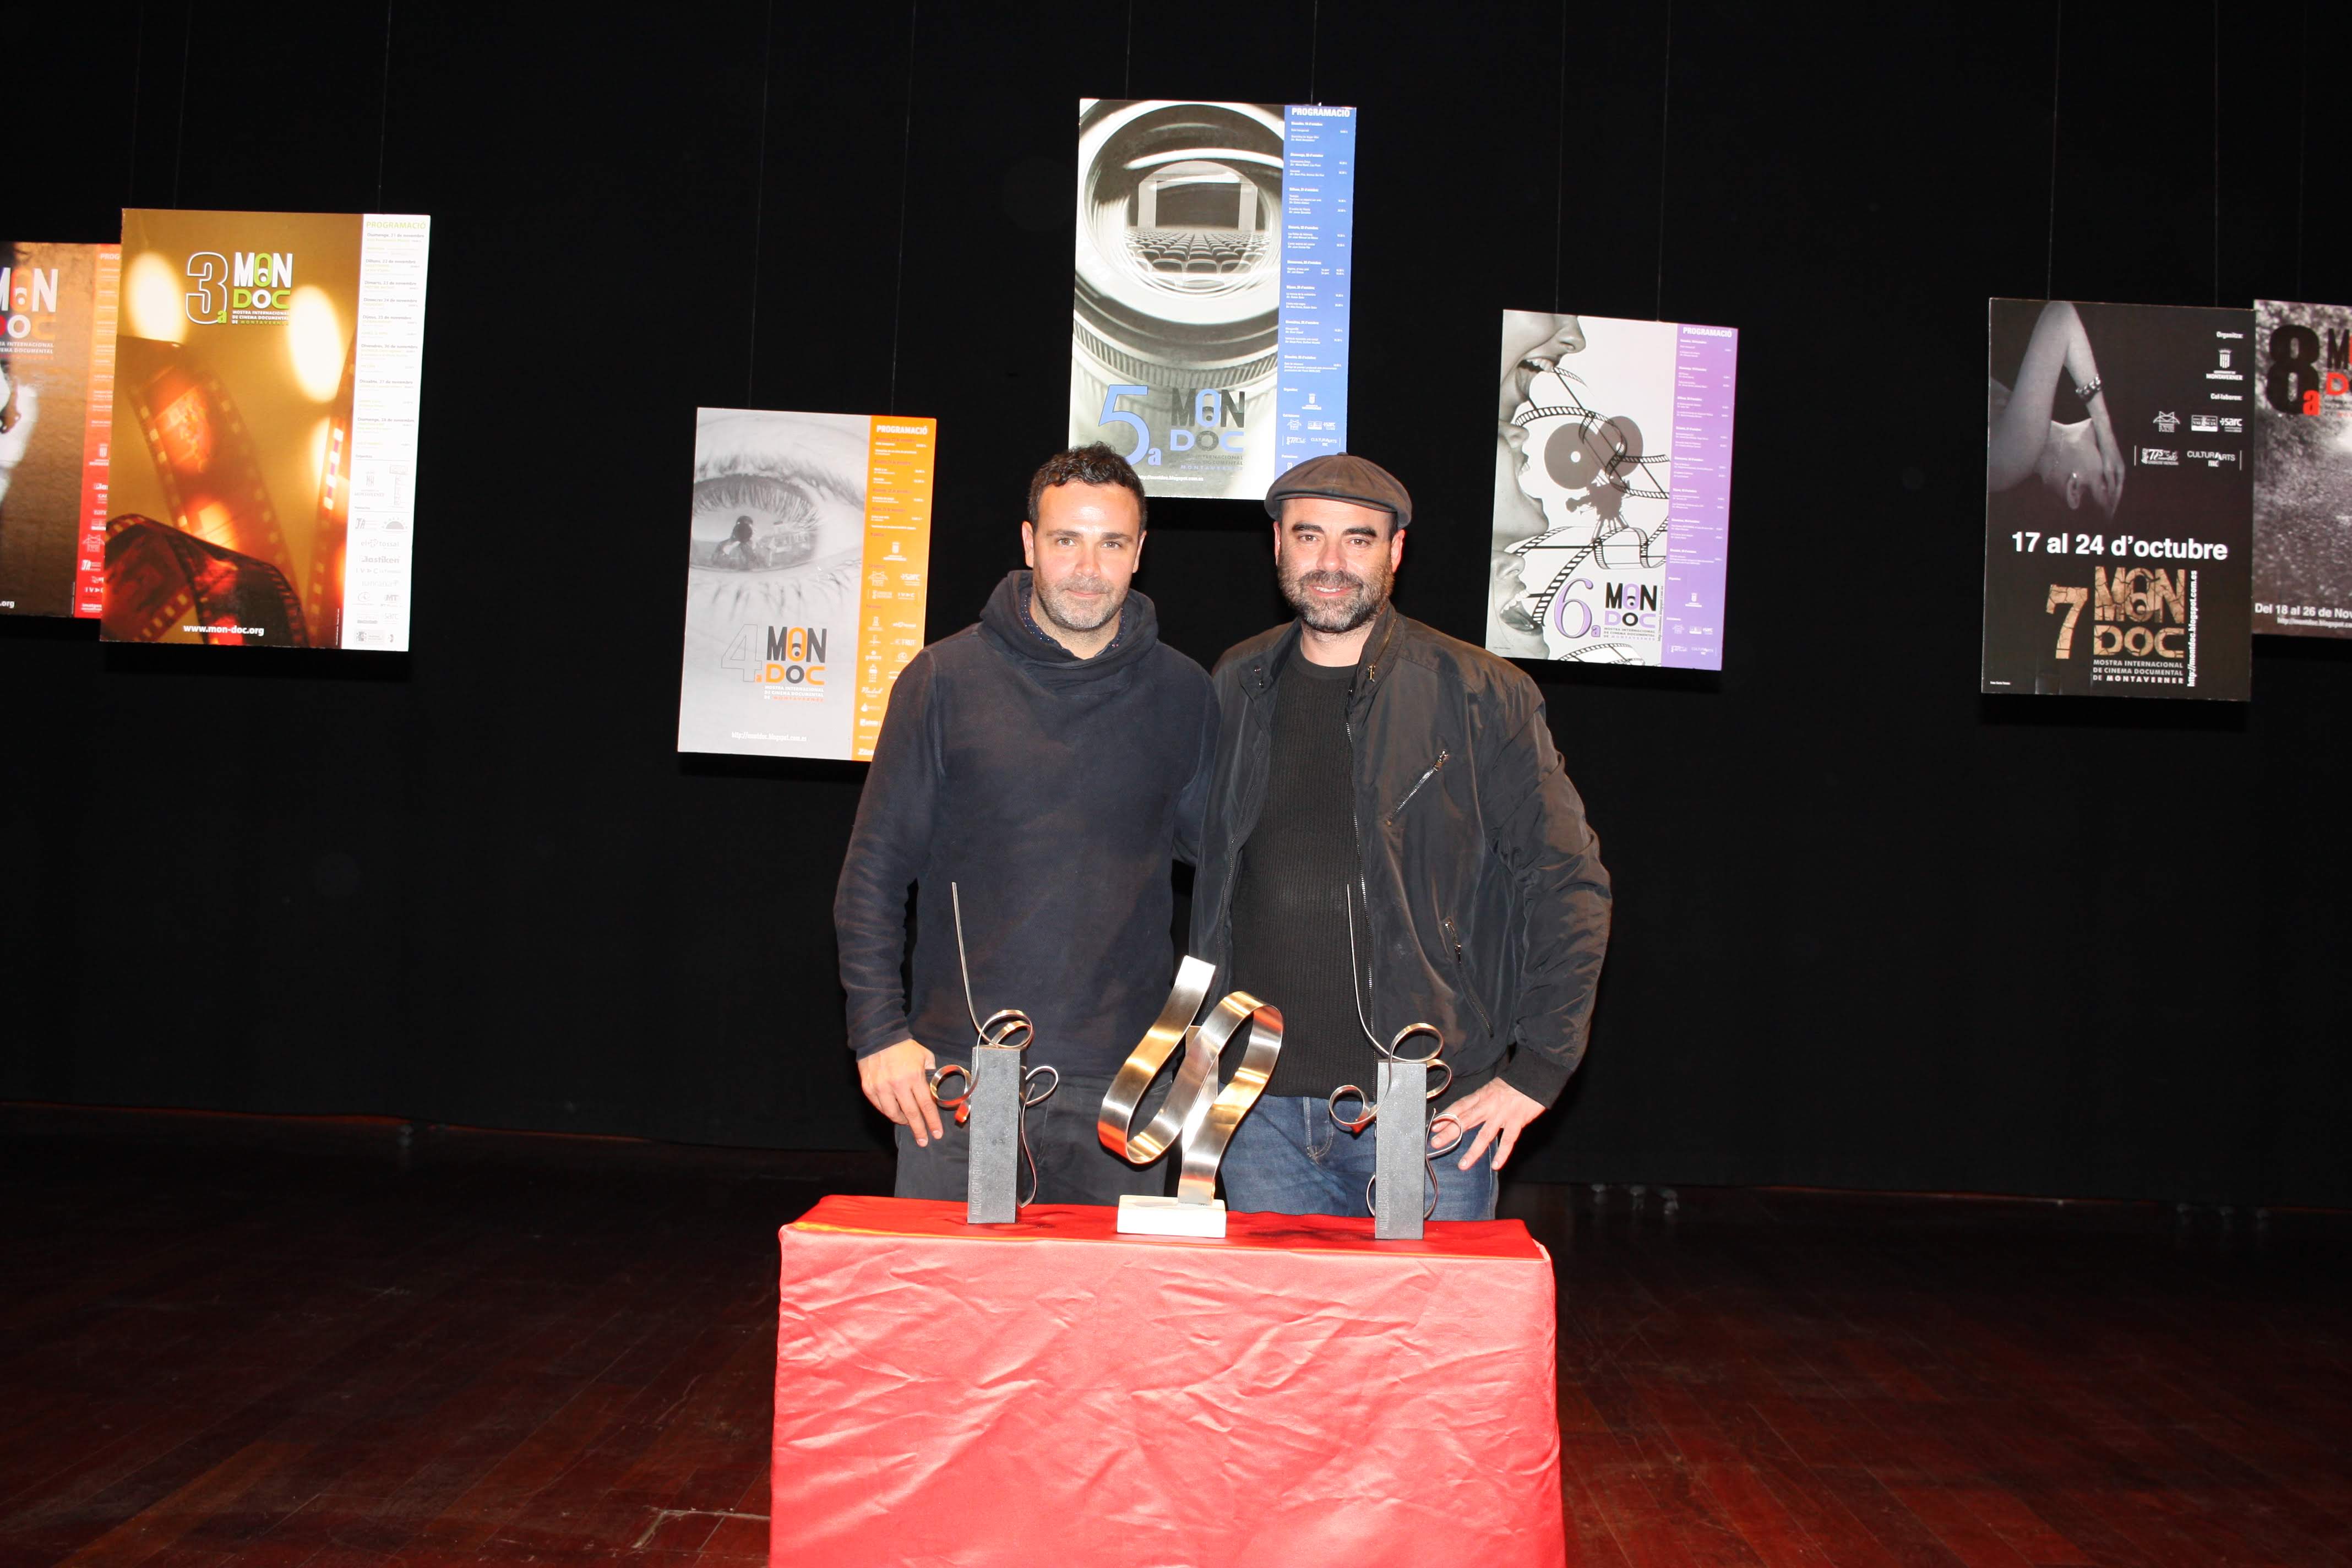 Els directors premiats, Natxo Leuza (esq.) i Xavier Baig